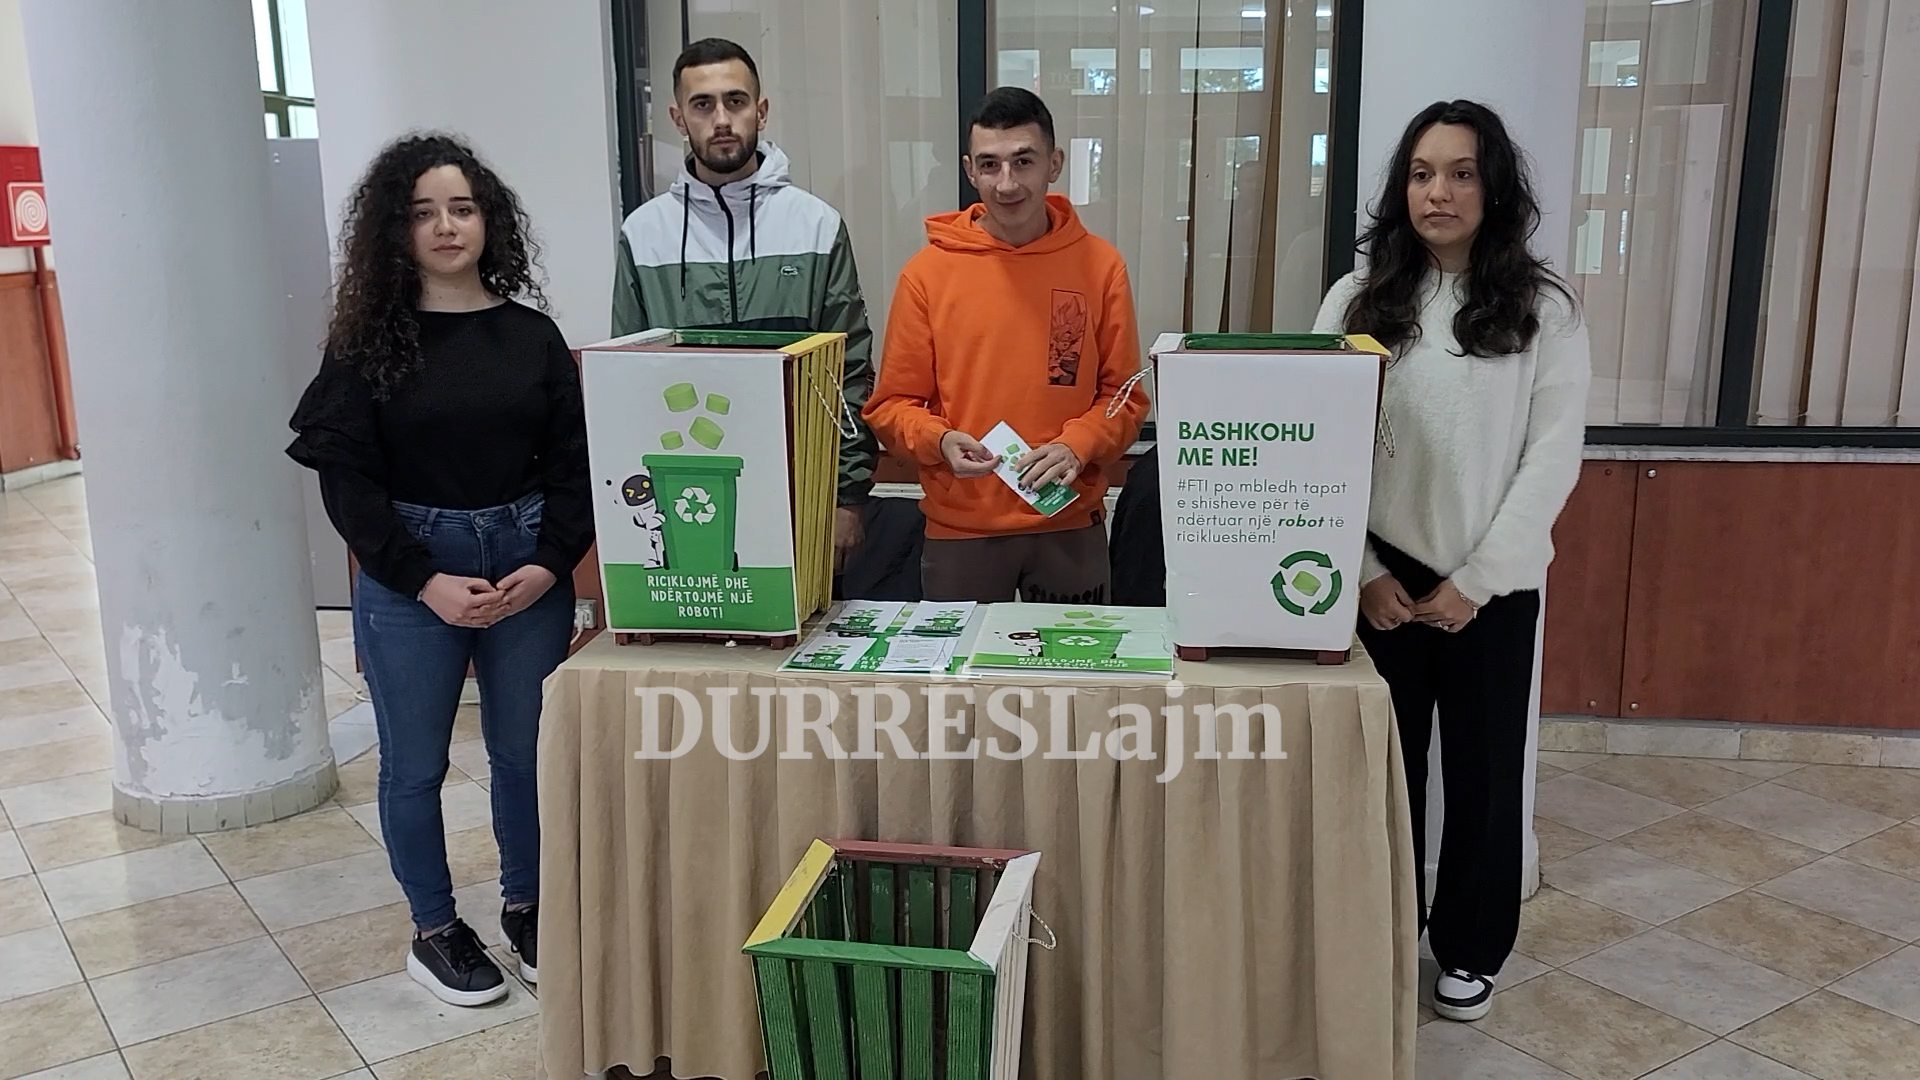 Një robot i riciklueshëm i bërë me tapa shishesh. Studentët e Durrësit ndërmarrin nismën inovative dhe ambientaliste (VIDEO)